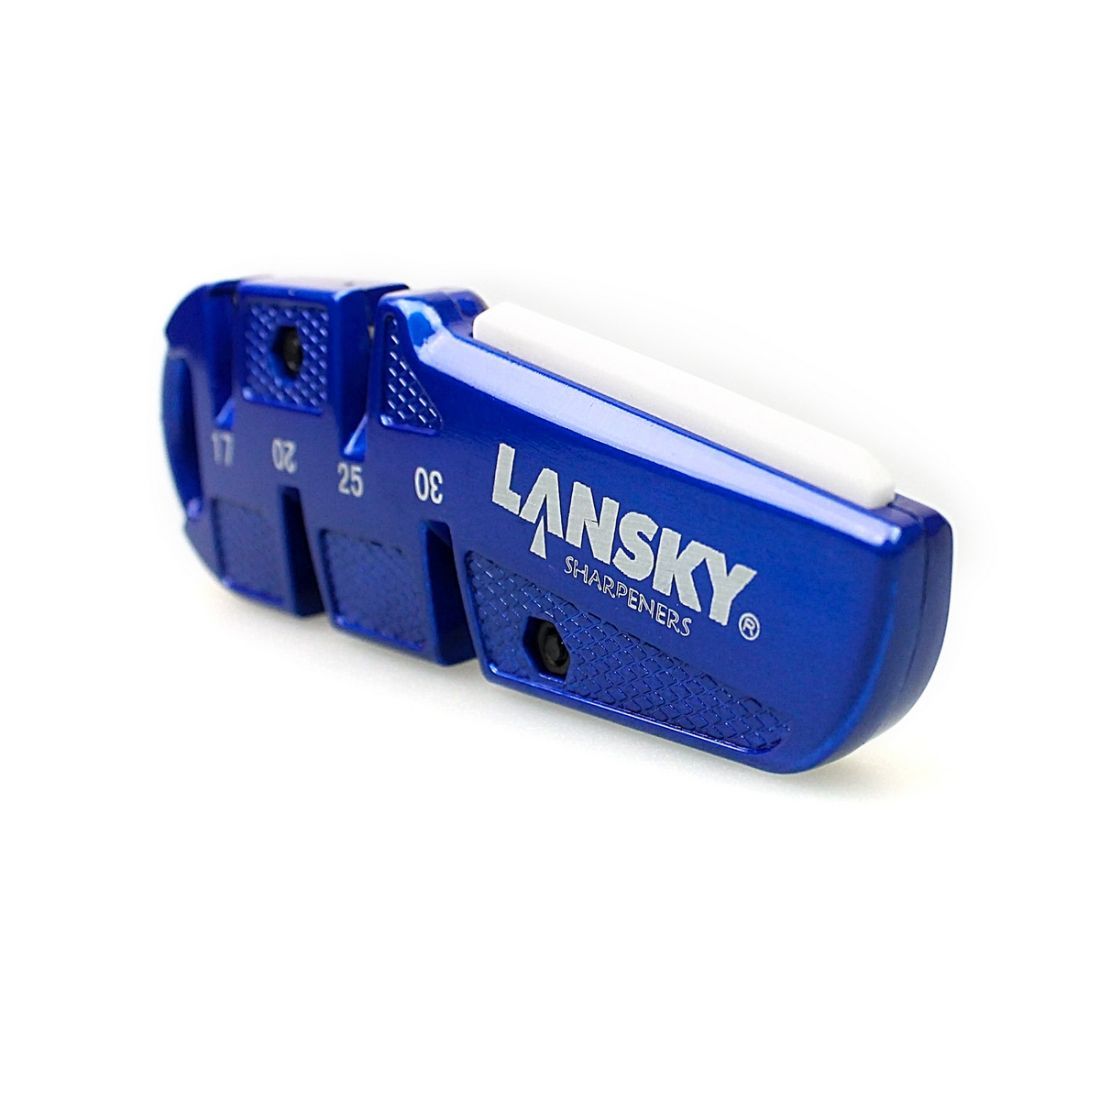 Lansky Портативная точилка для ножей Lansky QuadSharp